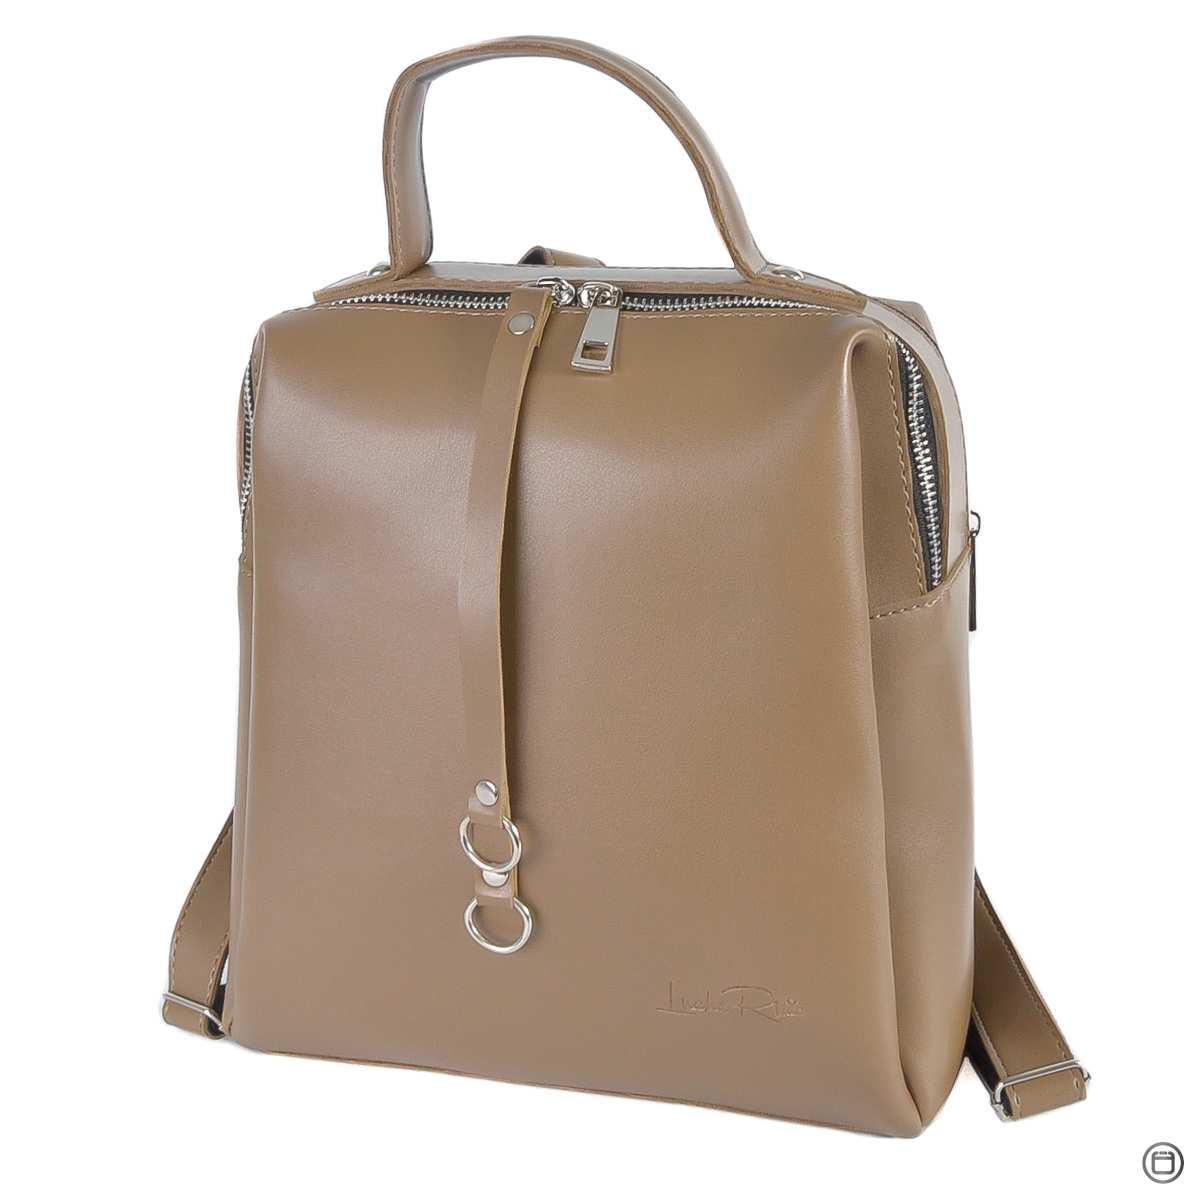 МОККО — якісний фабричний рюкзак на два відділення на блискавках (Луцьк, 660)